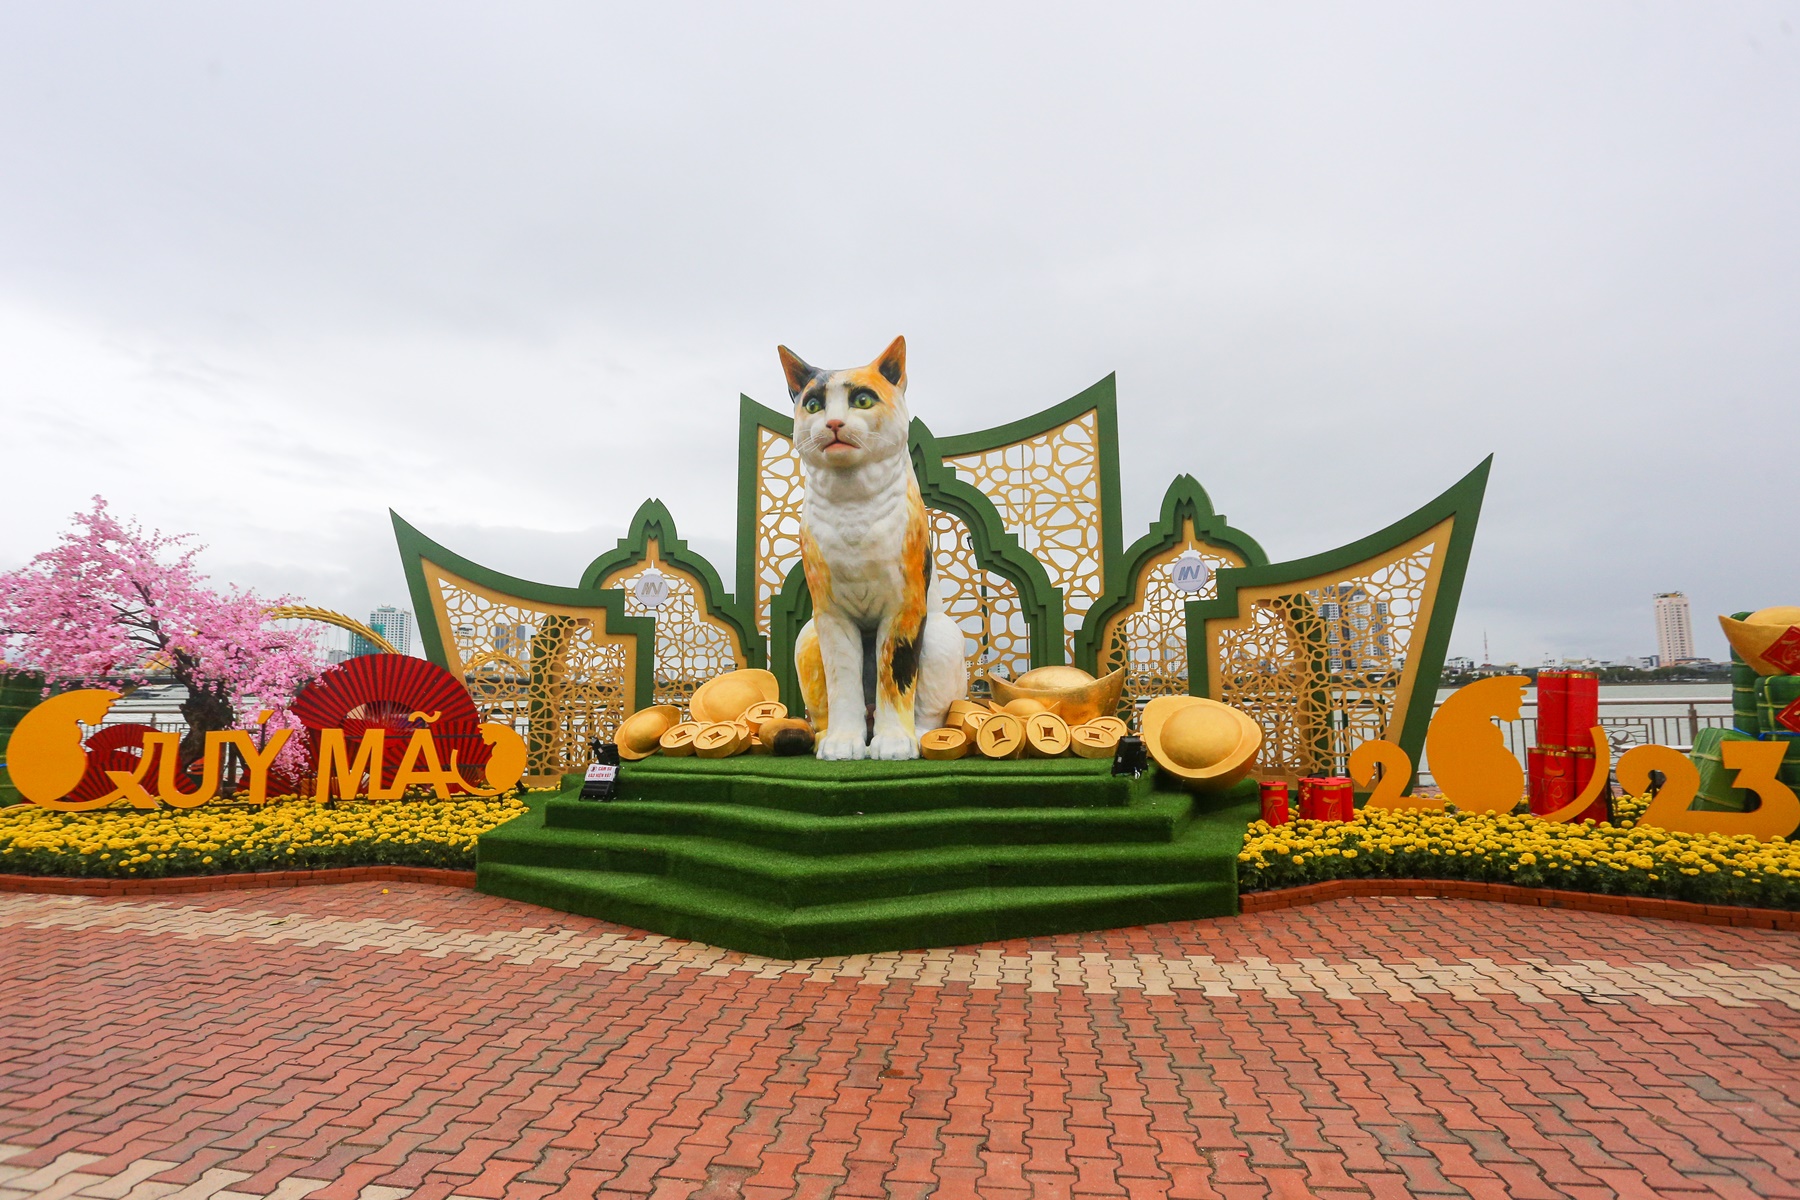 Lộ diện đàn linh vật mèo đủ sắc thái tại đường hoa Xuân Đà Nẵng - Ảnh 5.